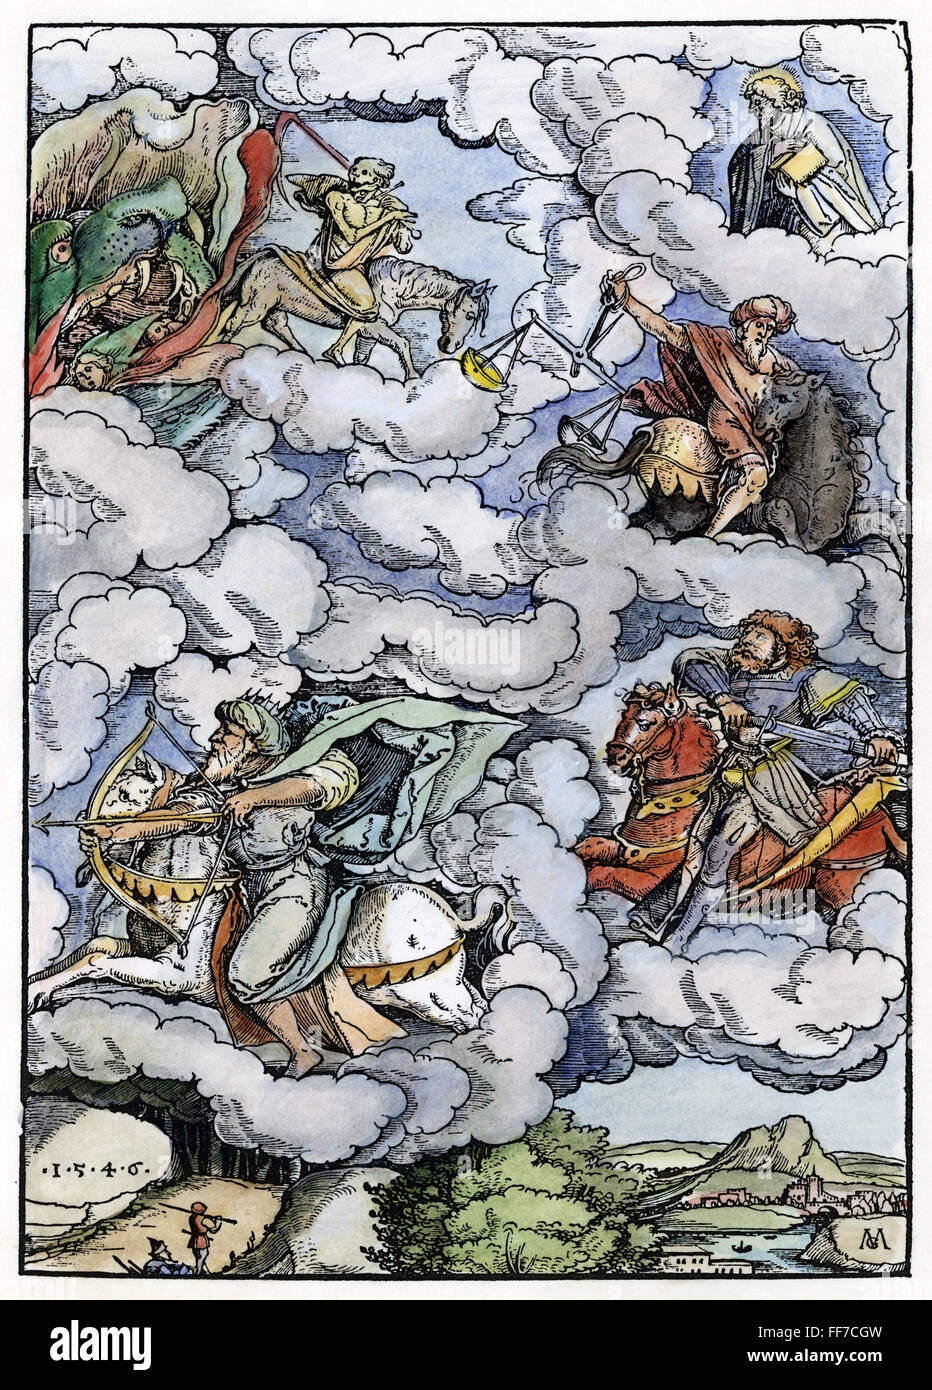 Quattro cavalieri. /Nil quattro cavalieri dell'Apocalisse. Xilografia a colori da Matthias Gerung, 1546. Foto Stock